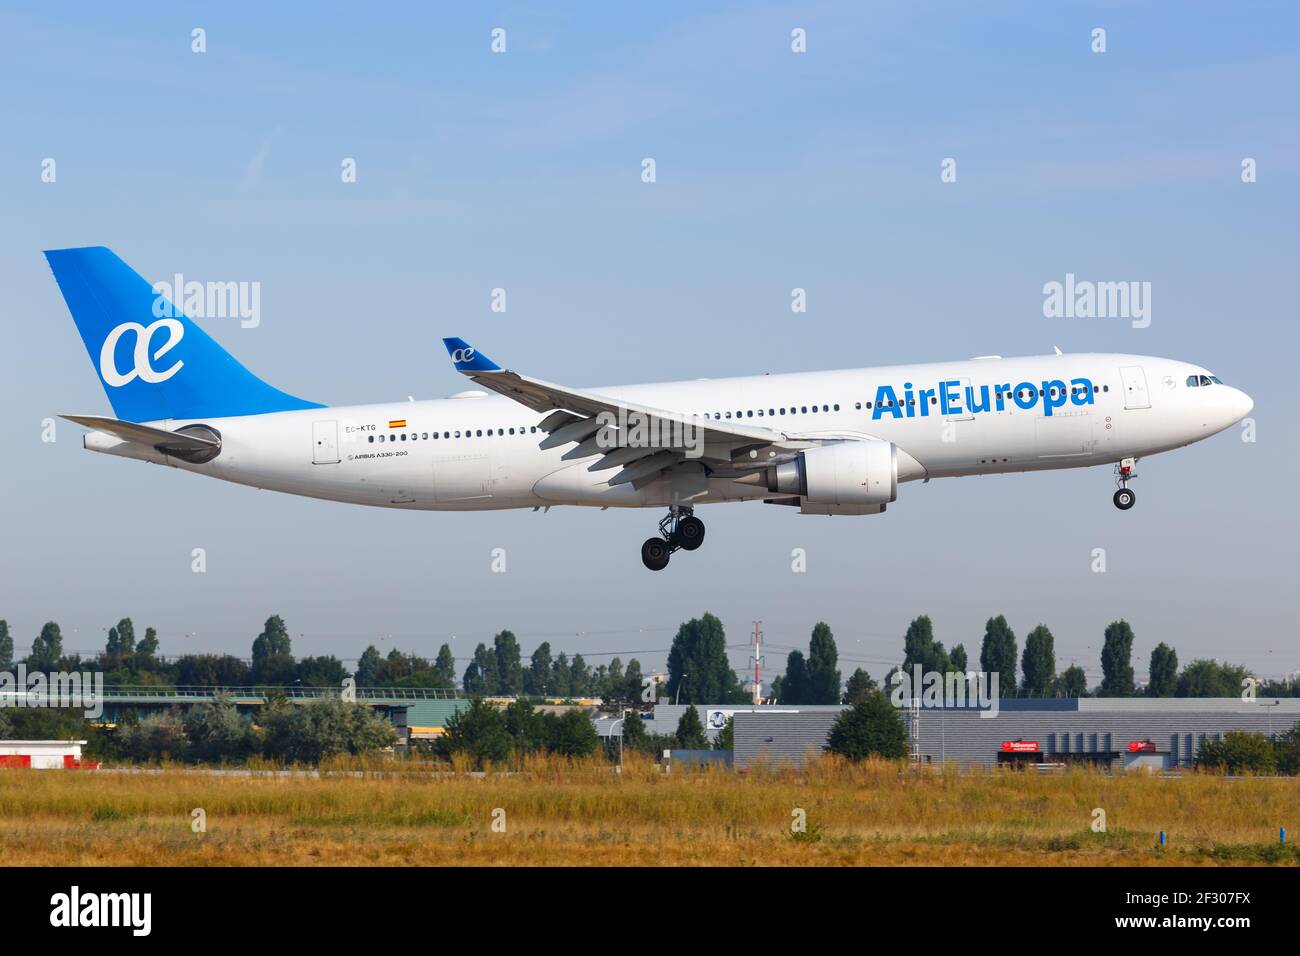 París, Francia - 16 de agosto de 2018: Air Europa Airbus A330 en el  aeropuerto de París Orly (ORY) en Francia. Airbus es un fabricante europeo  de aviones Fotografía de stock - Alamy